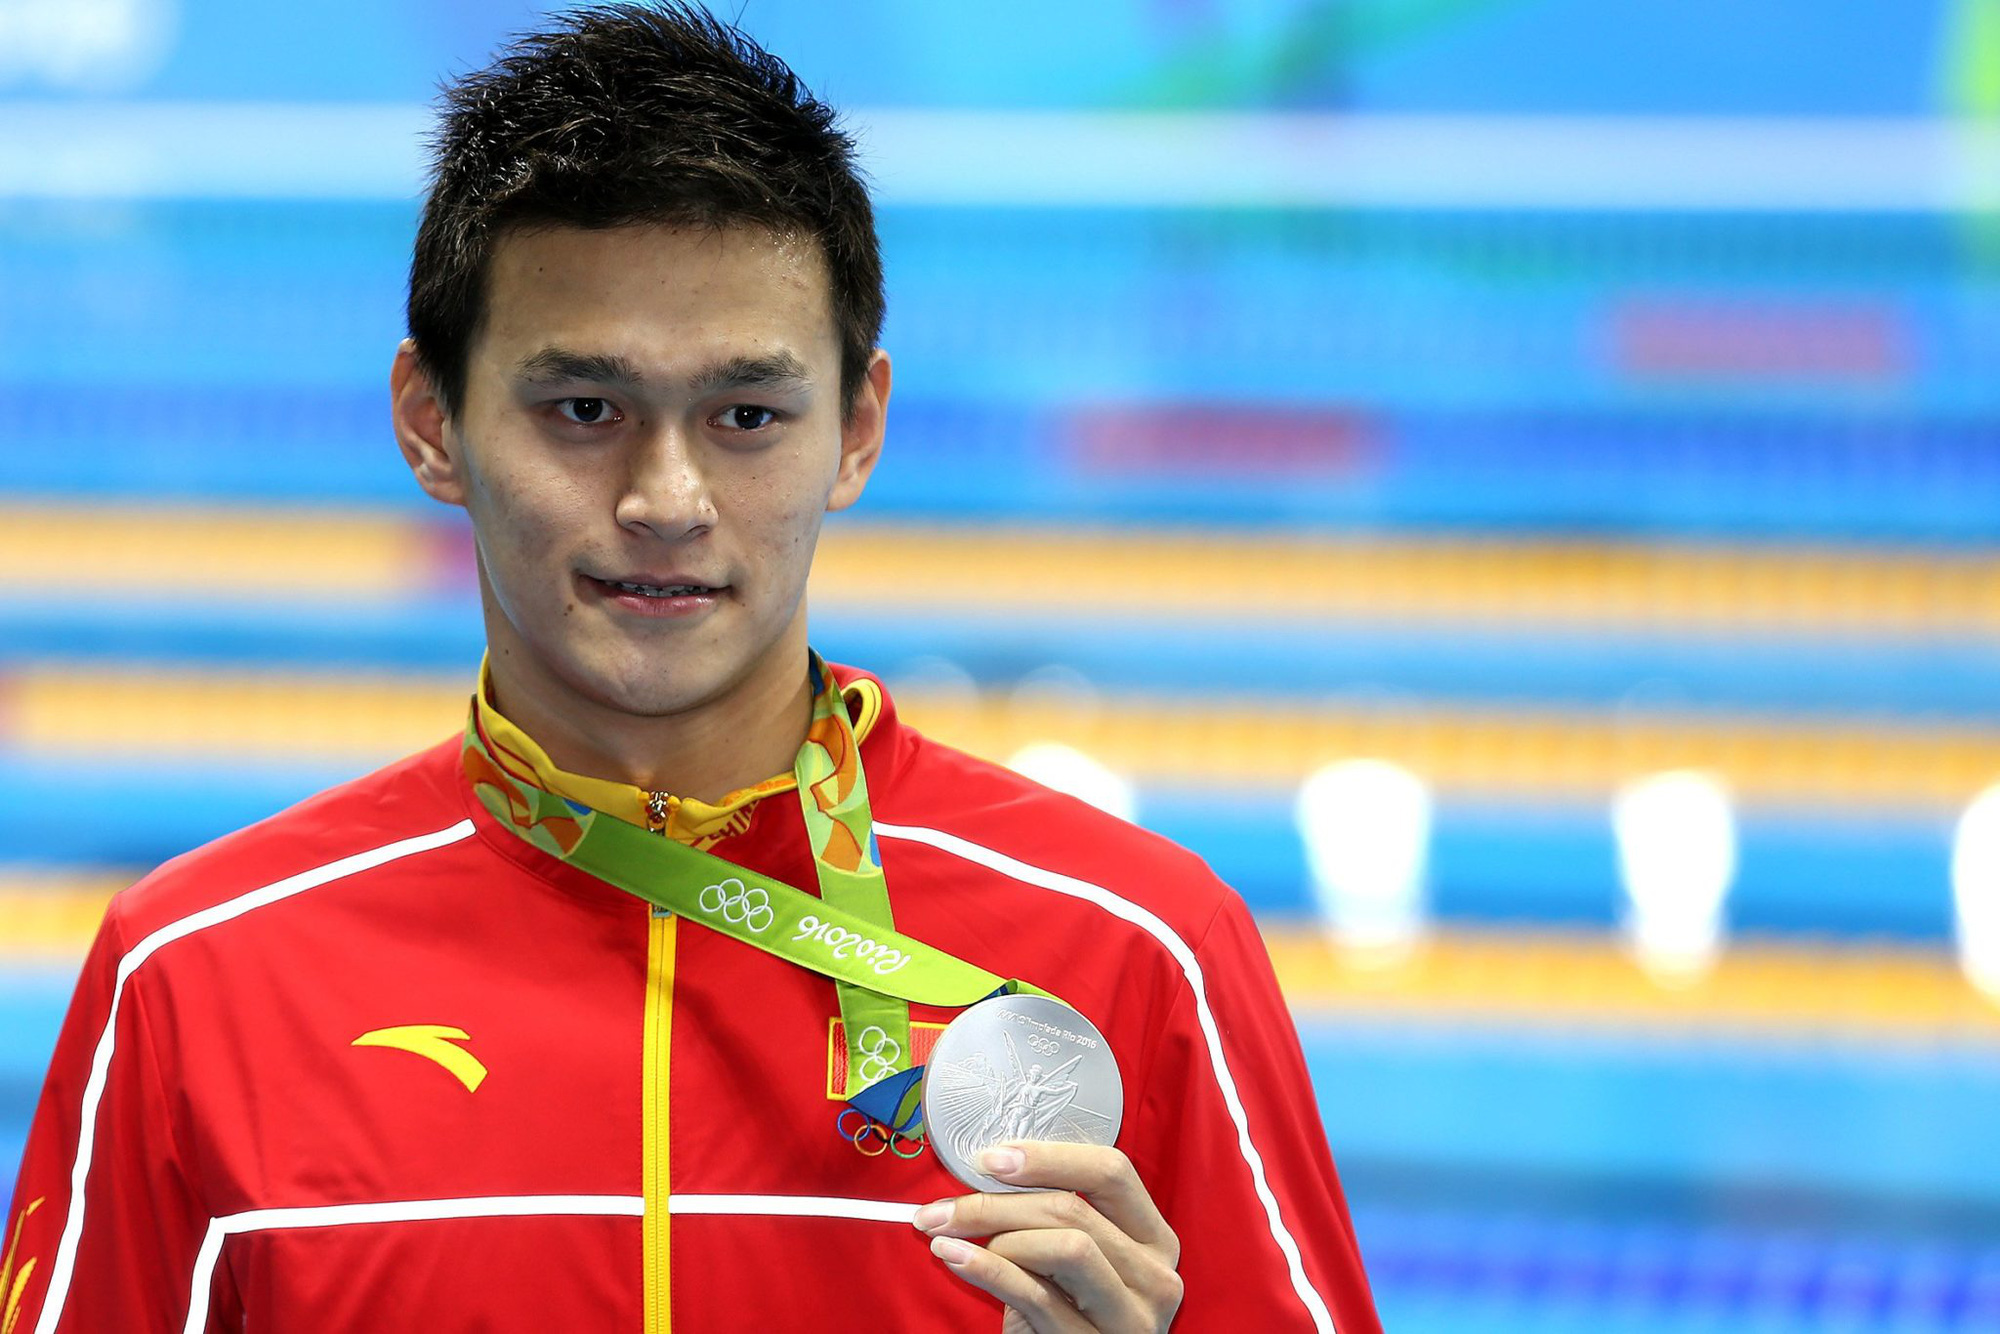 Kình ngư Sun Yang chưa thể trở lại tham dự Olympic năm nay